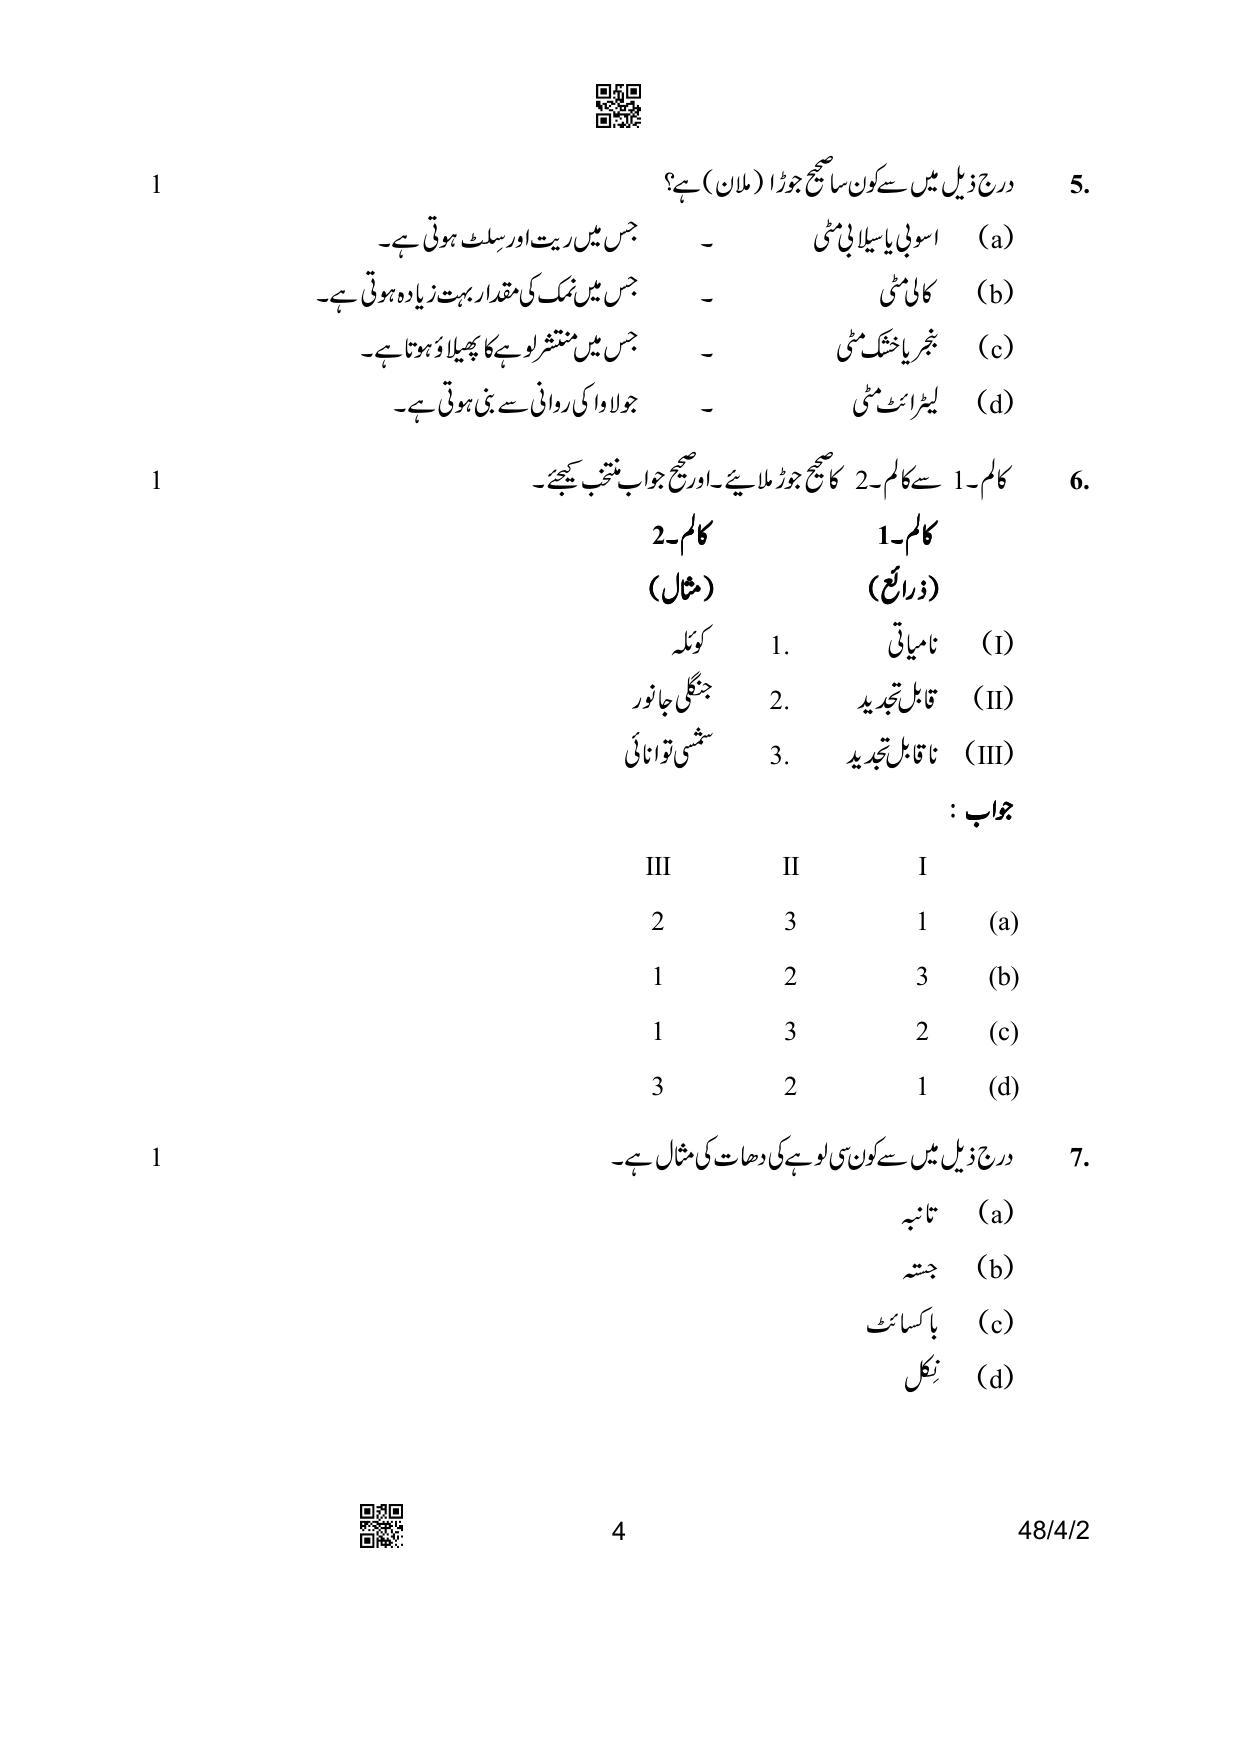 CBSE Class 10 48-4-2 Social Science Urdu Version 2023 Question Paper - Page 4